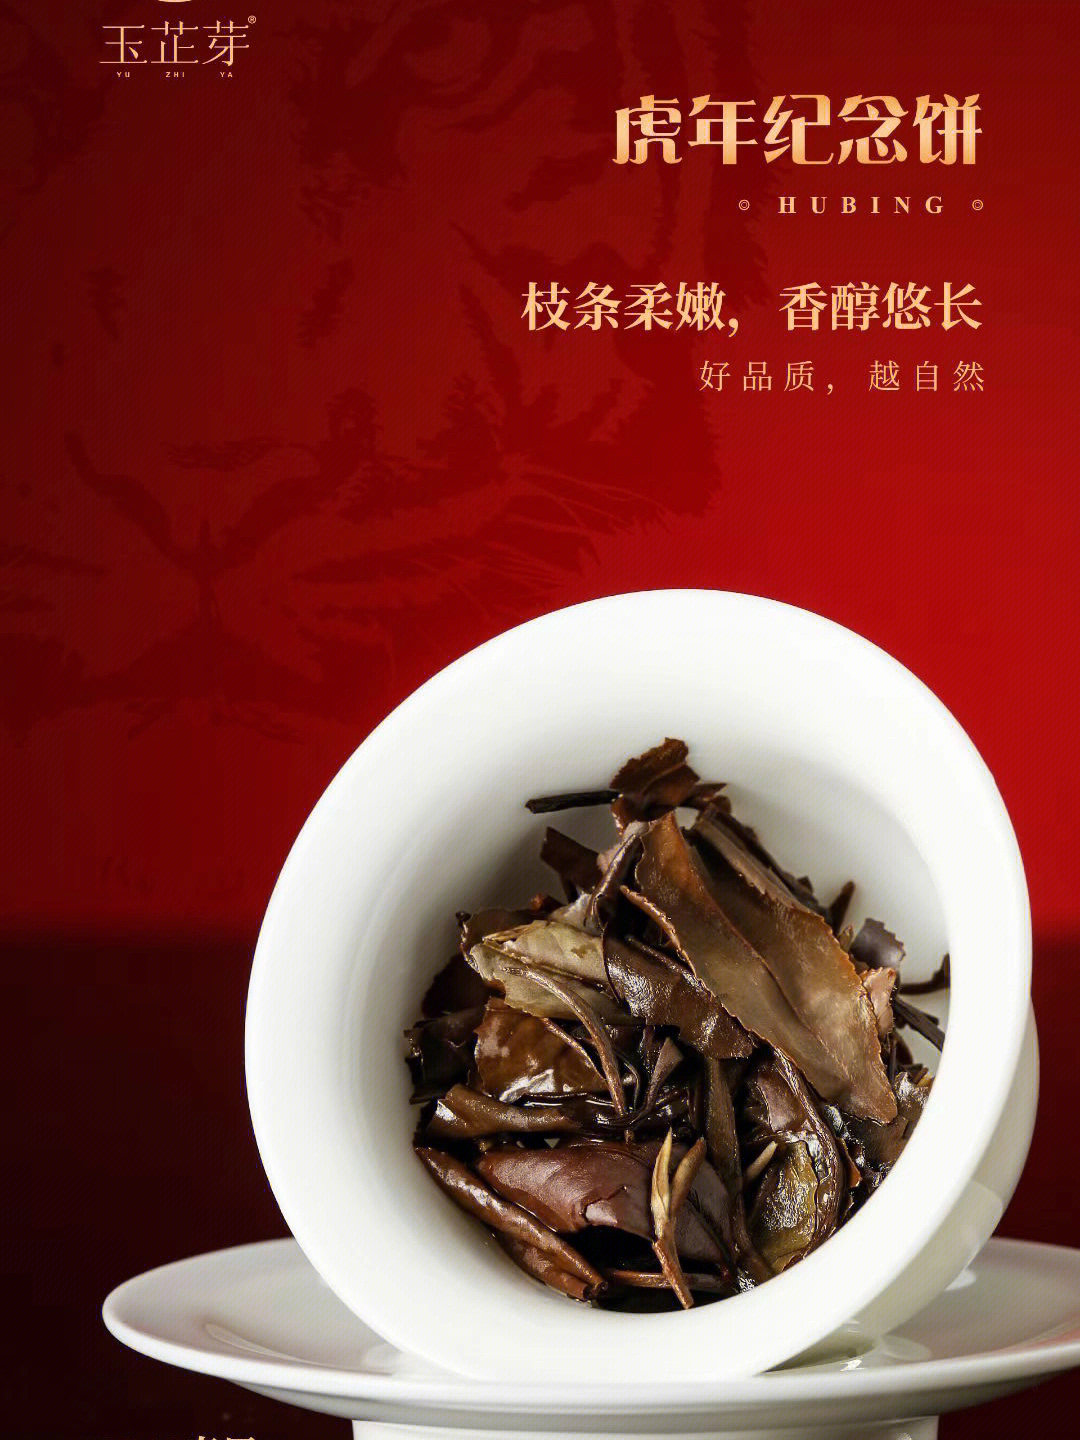 福鼎白茶广告设计图图片